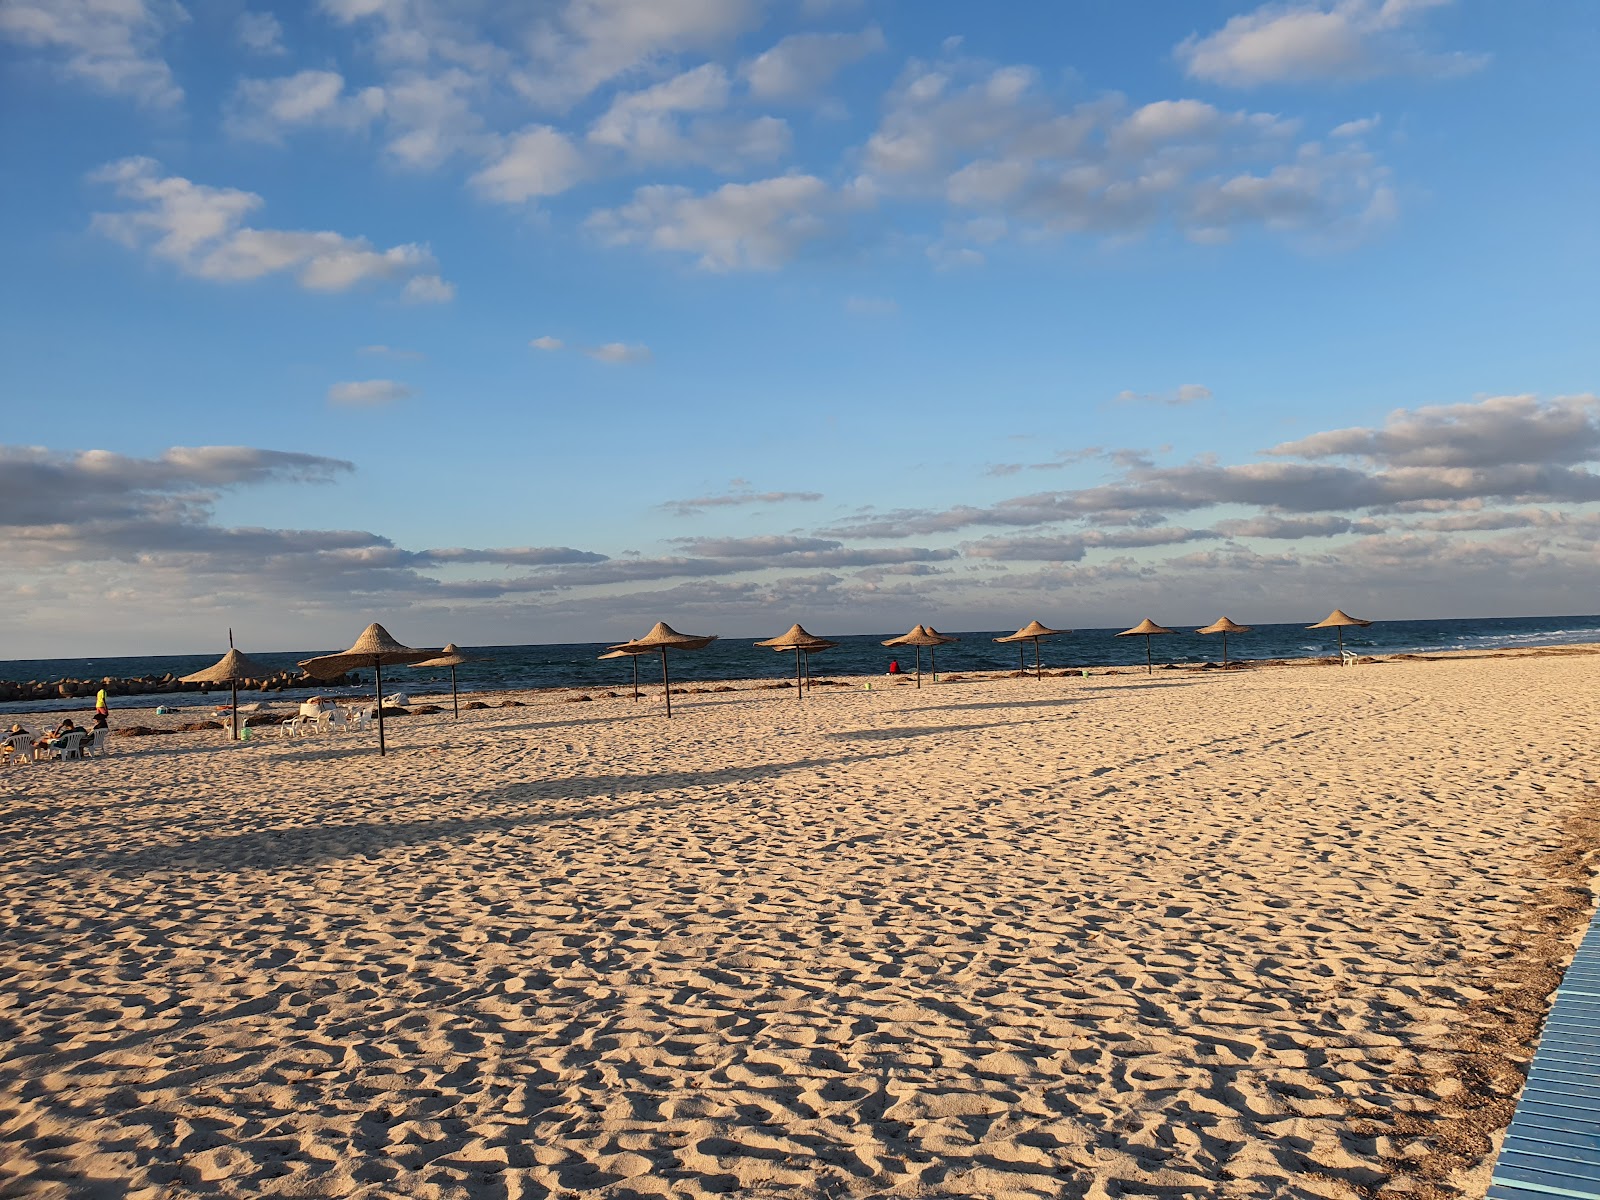 Al Bahri Beach'in fotoğrafı imkanlar alanı